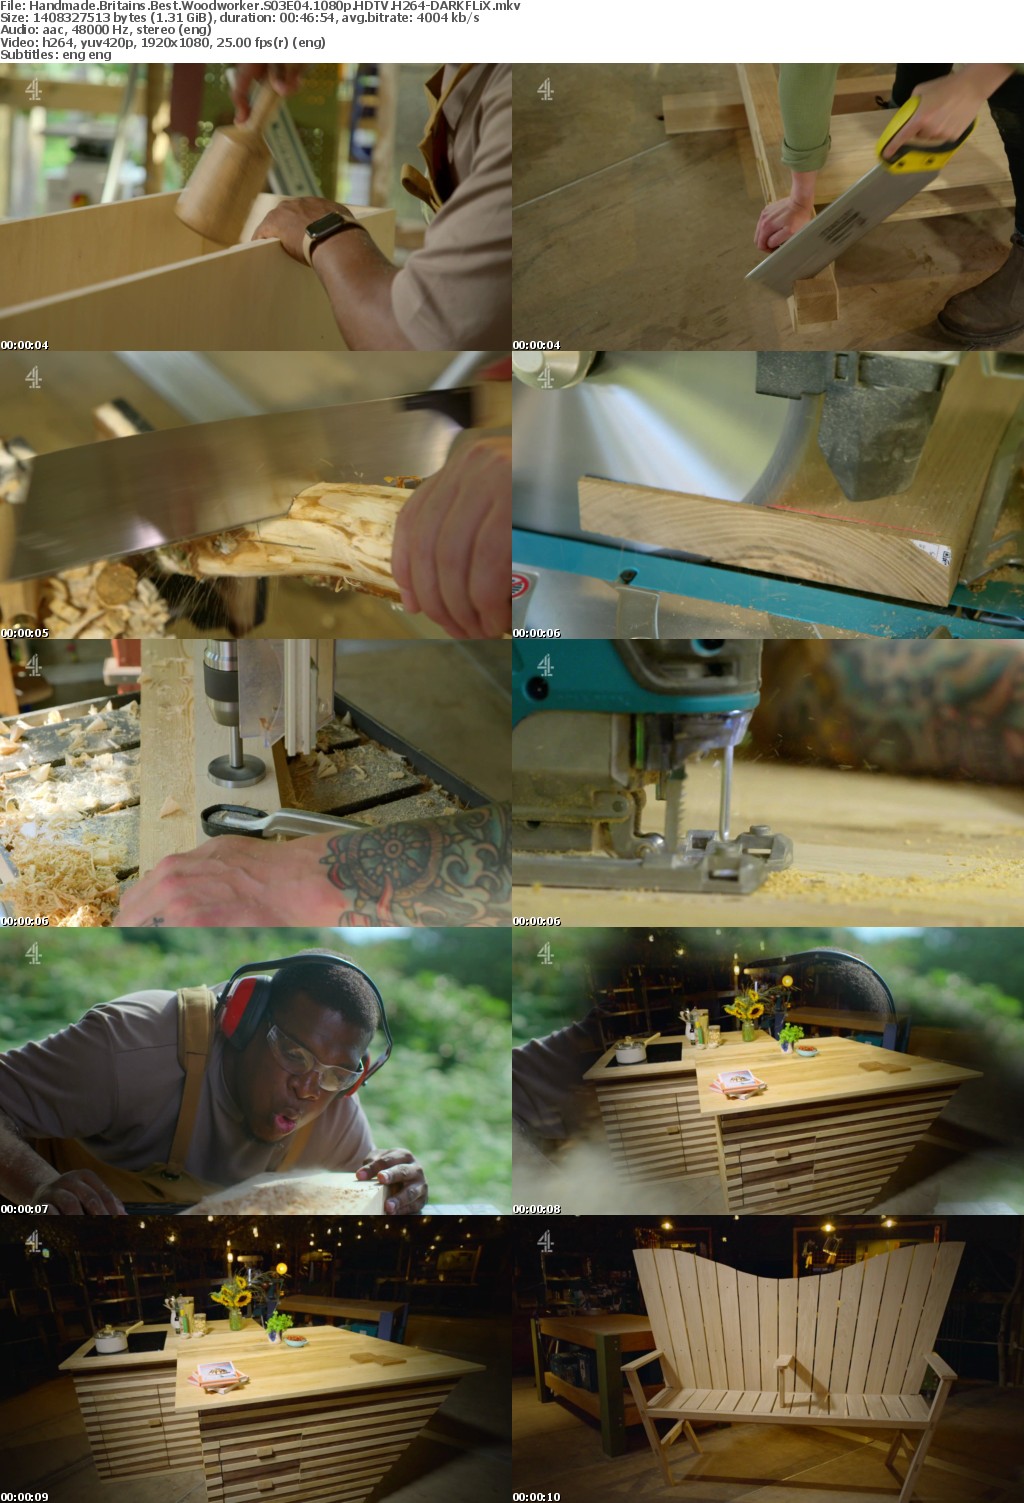 Handmade Britains Best Woodworker S03E04 1080p HDTV H264-DARKFLiX